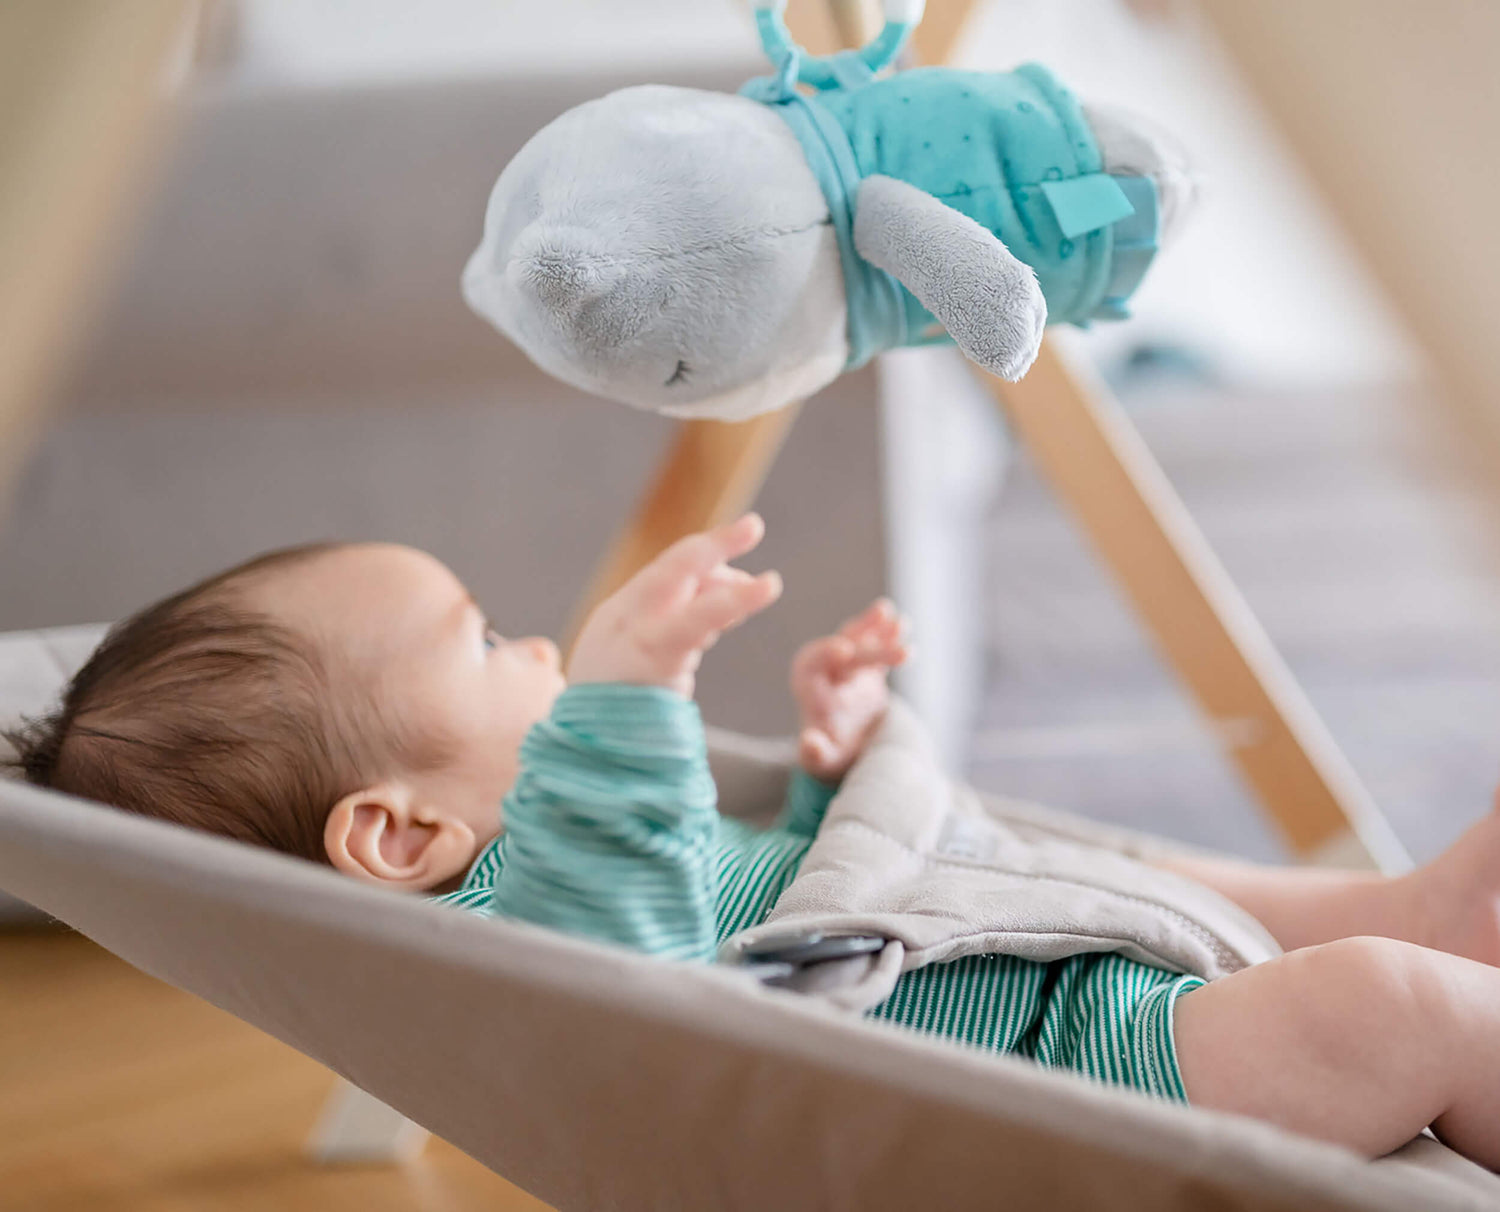 Bruits blancs pour endormir bébé – Puericulture